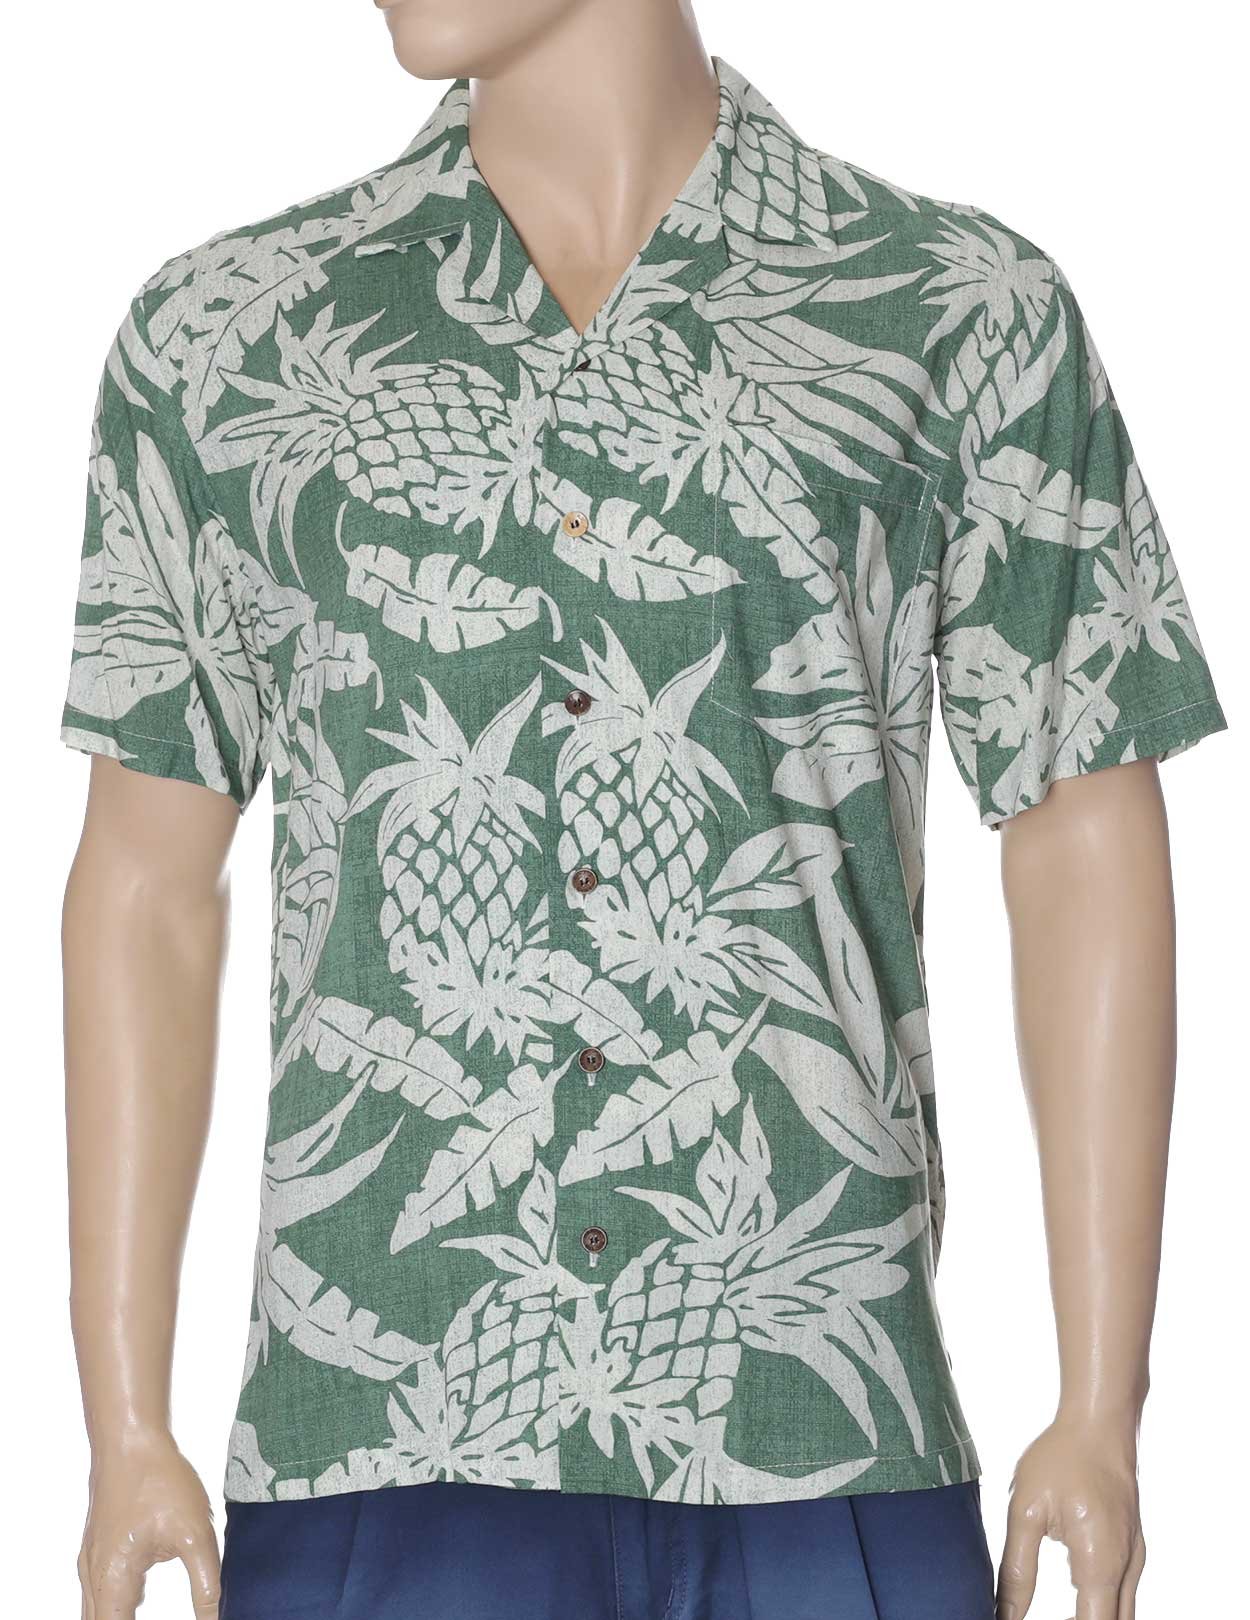 Lanai Pineapple Rayon Aloha Shirt Green